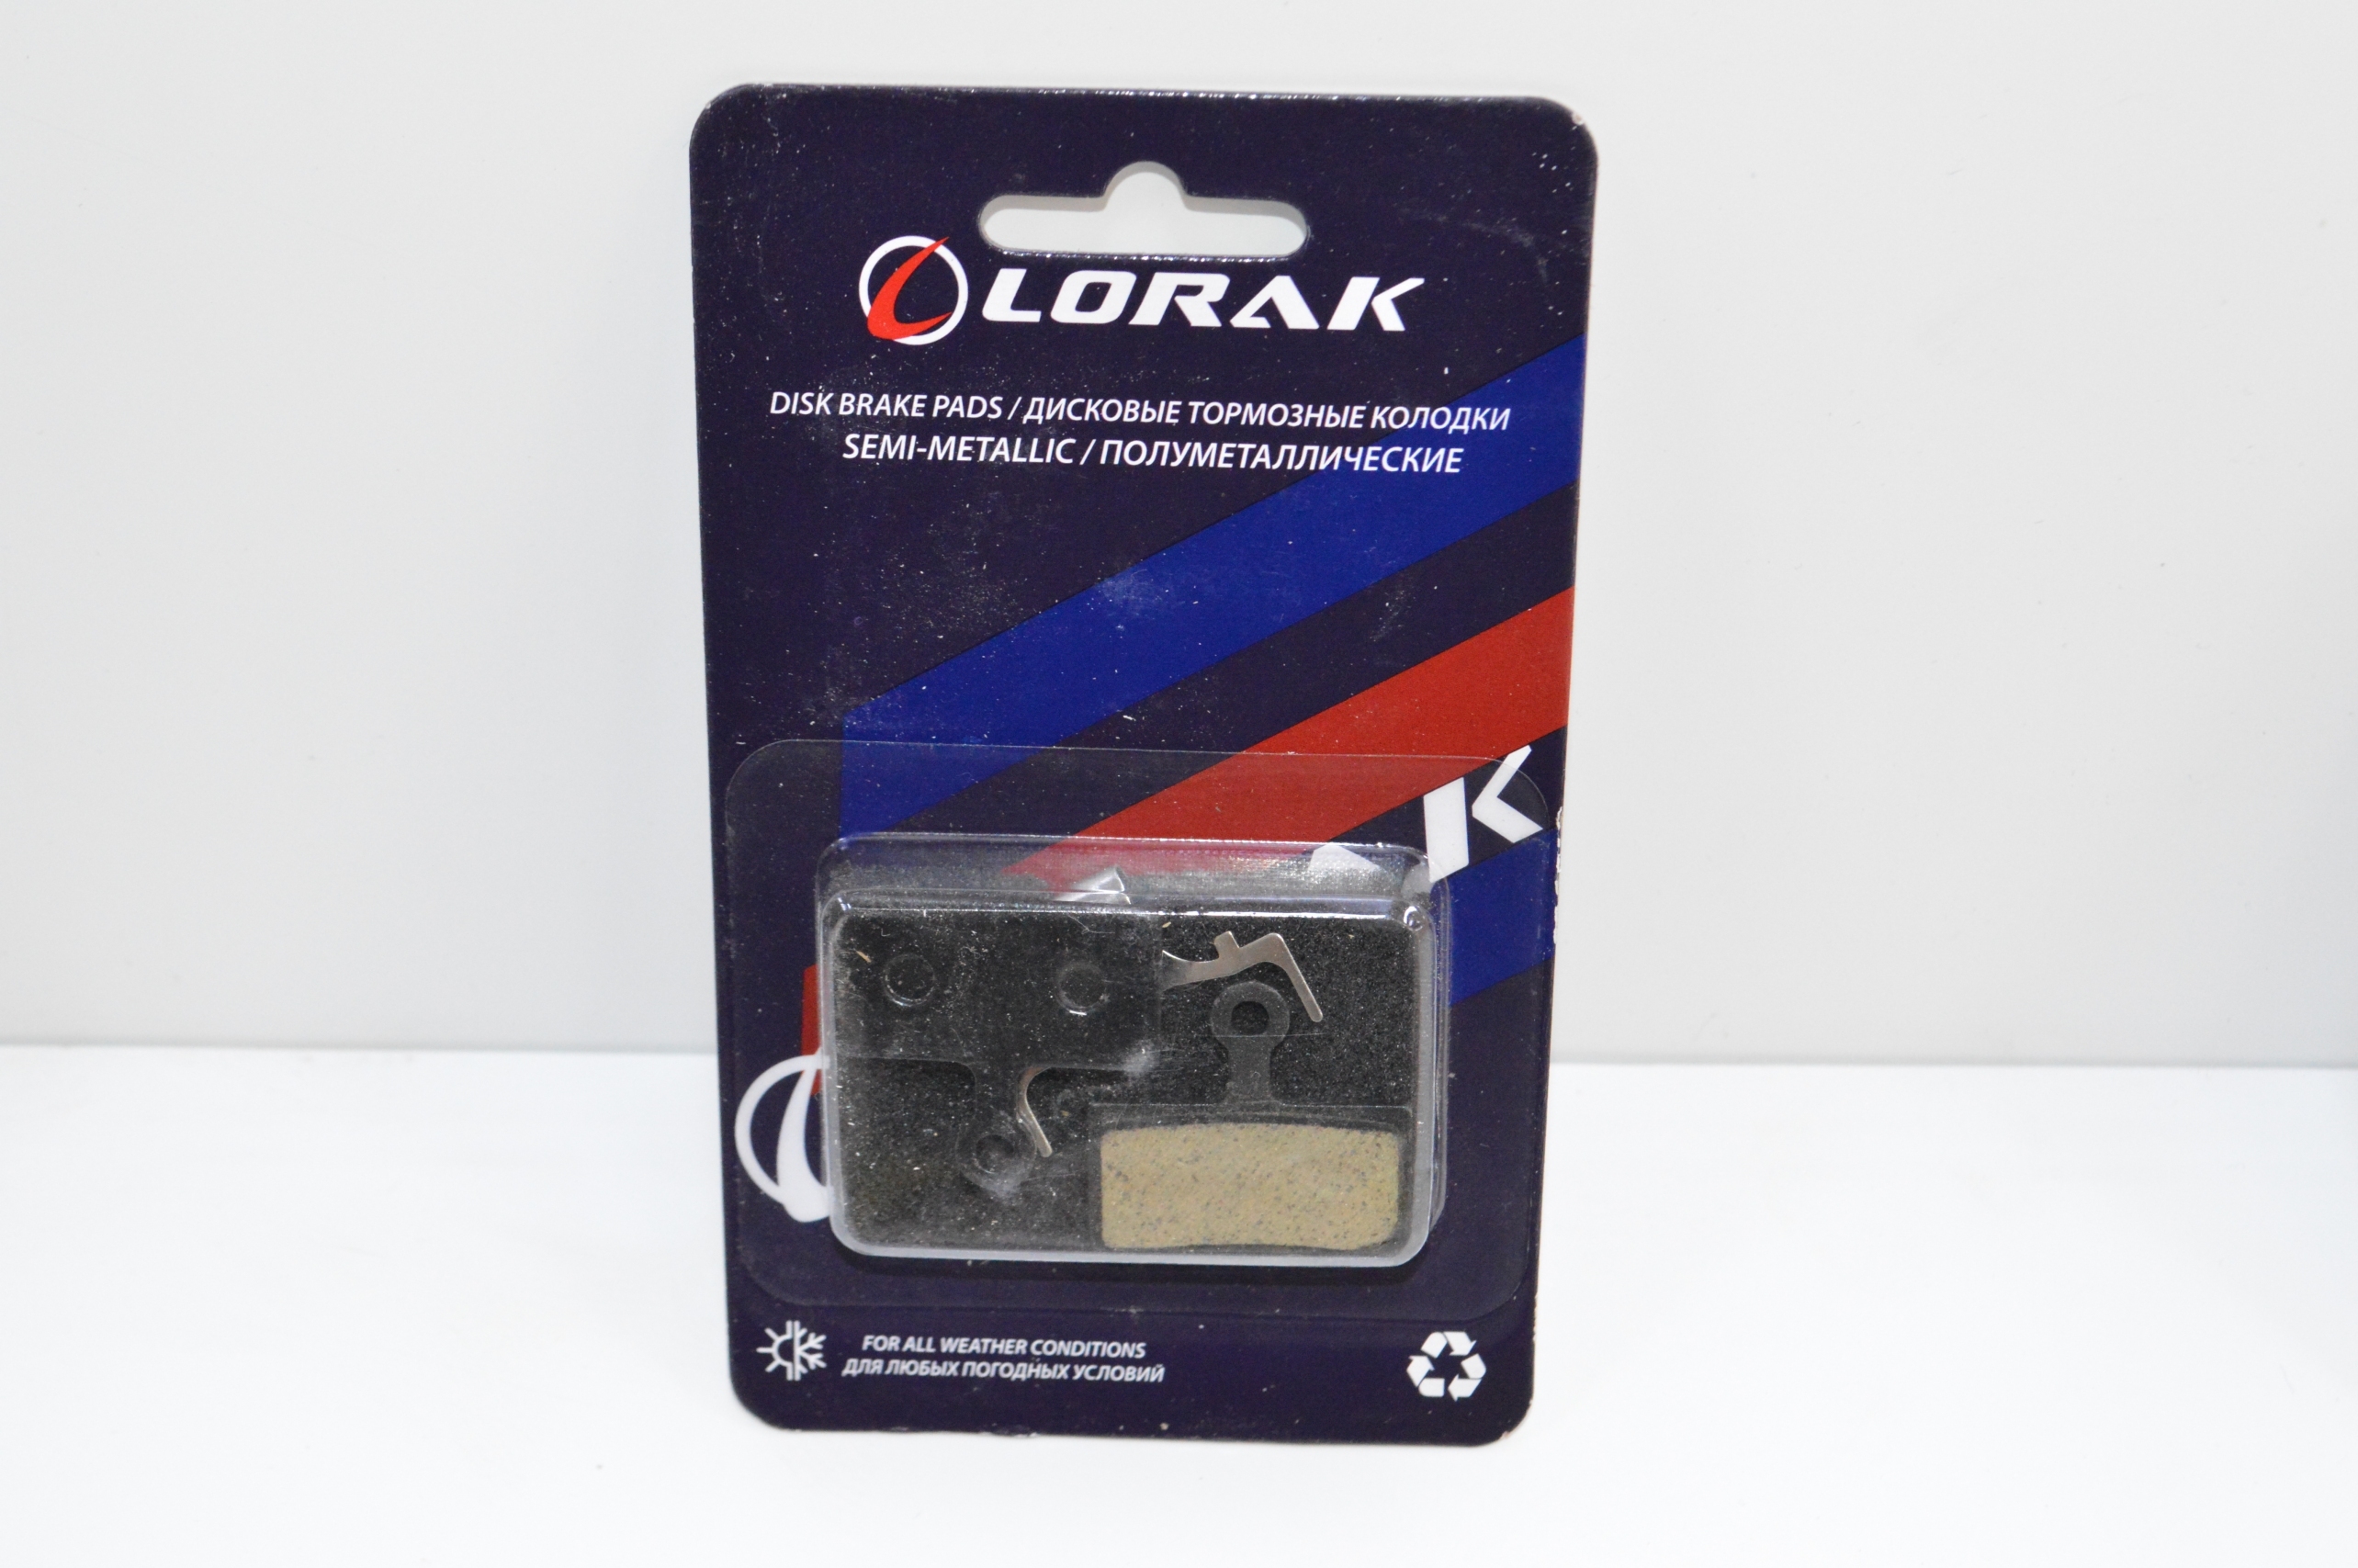 Колодка для диска Lorak P-05, код 40926